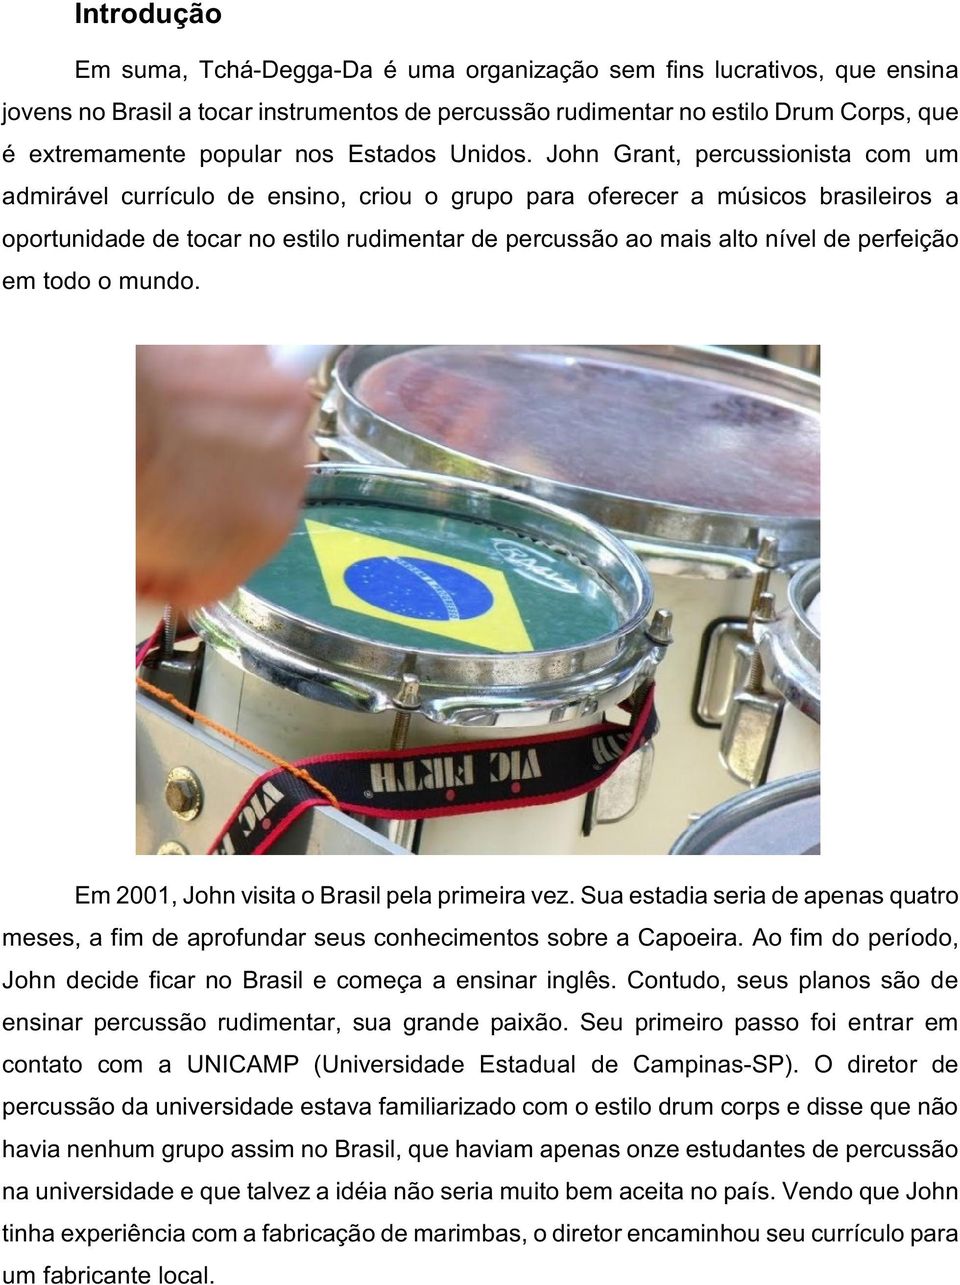 John Grant, percussionista com um admirável currículo de ensino, criou o grupo para oferecer a músicos brasileiros a oportunidade de tocar no estilo rudimentar de percussão ao mais alto nível de